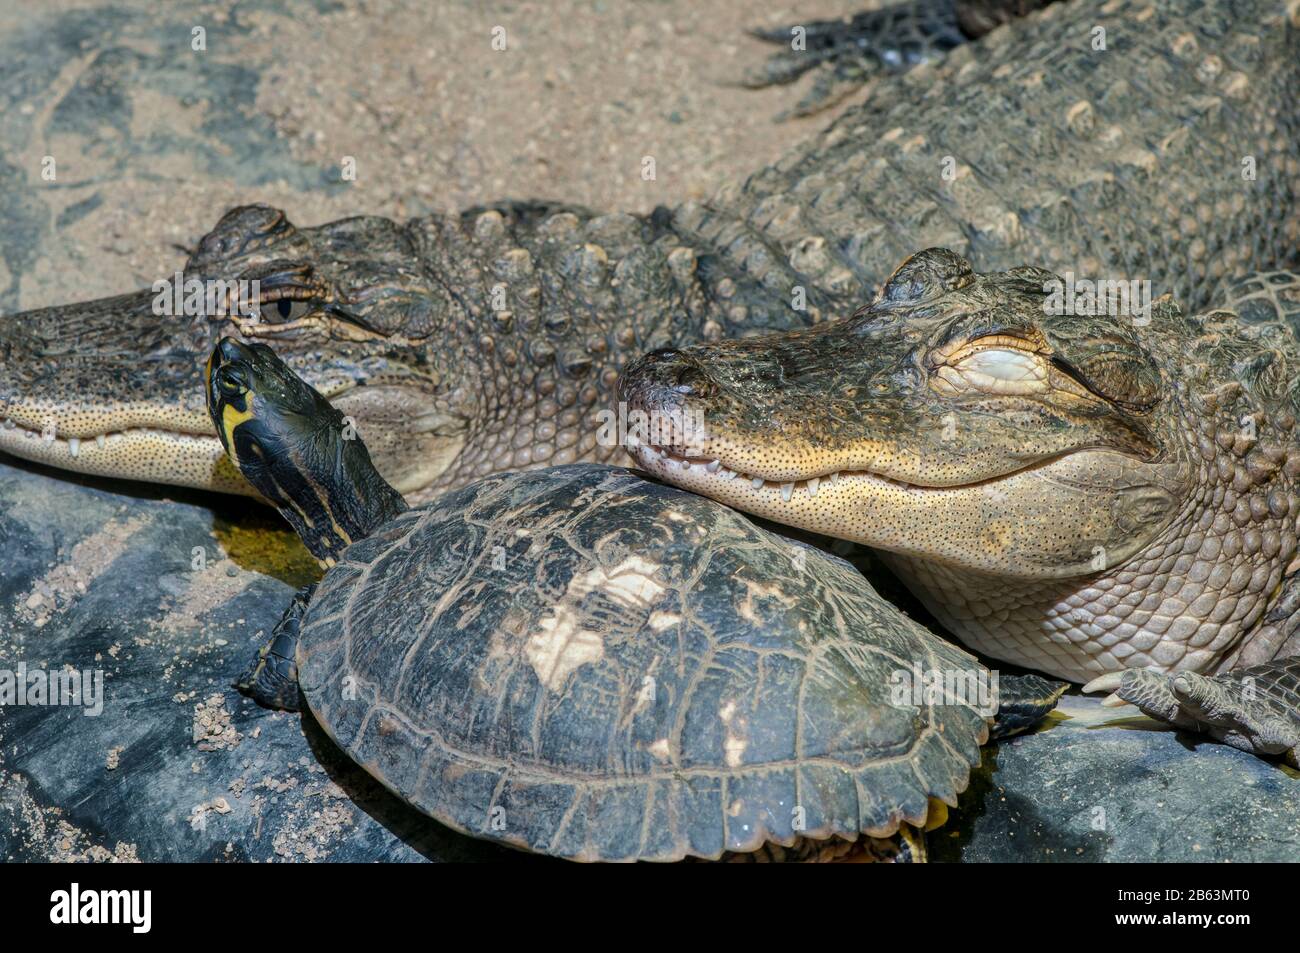 Owatonna, Minnesota. Reptilien- und amphibischer Entdeckungszoo. Zwei 13 Jahre alte amerikanische Alligatoren, Alligator mississippiensis, die auf Schildkröte ruht. Stockfoto